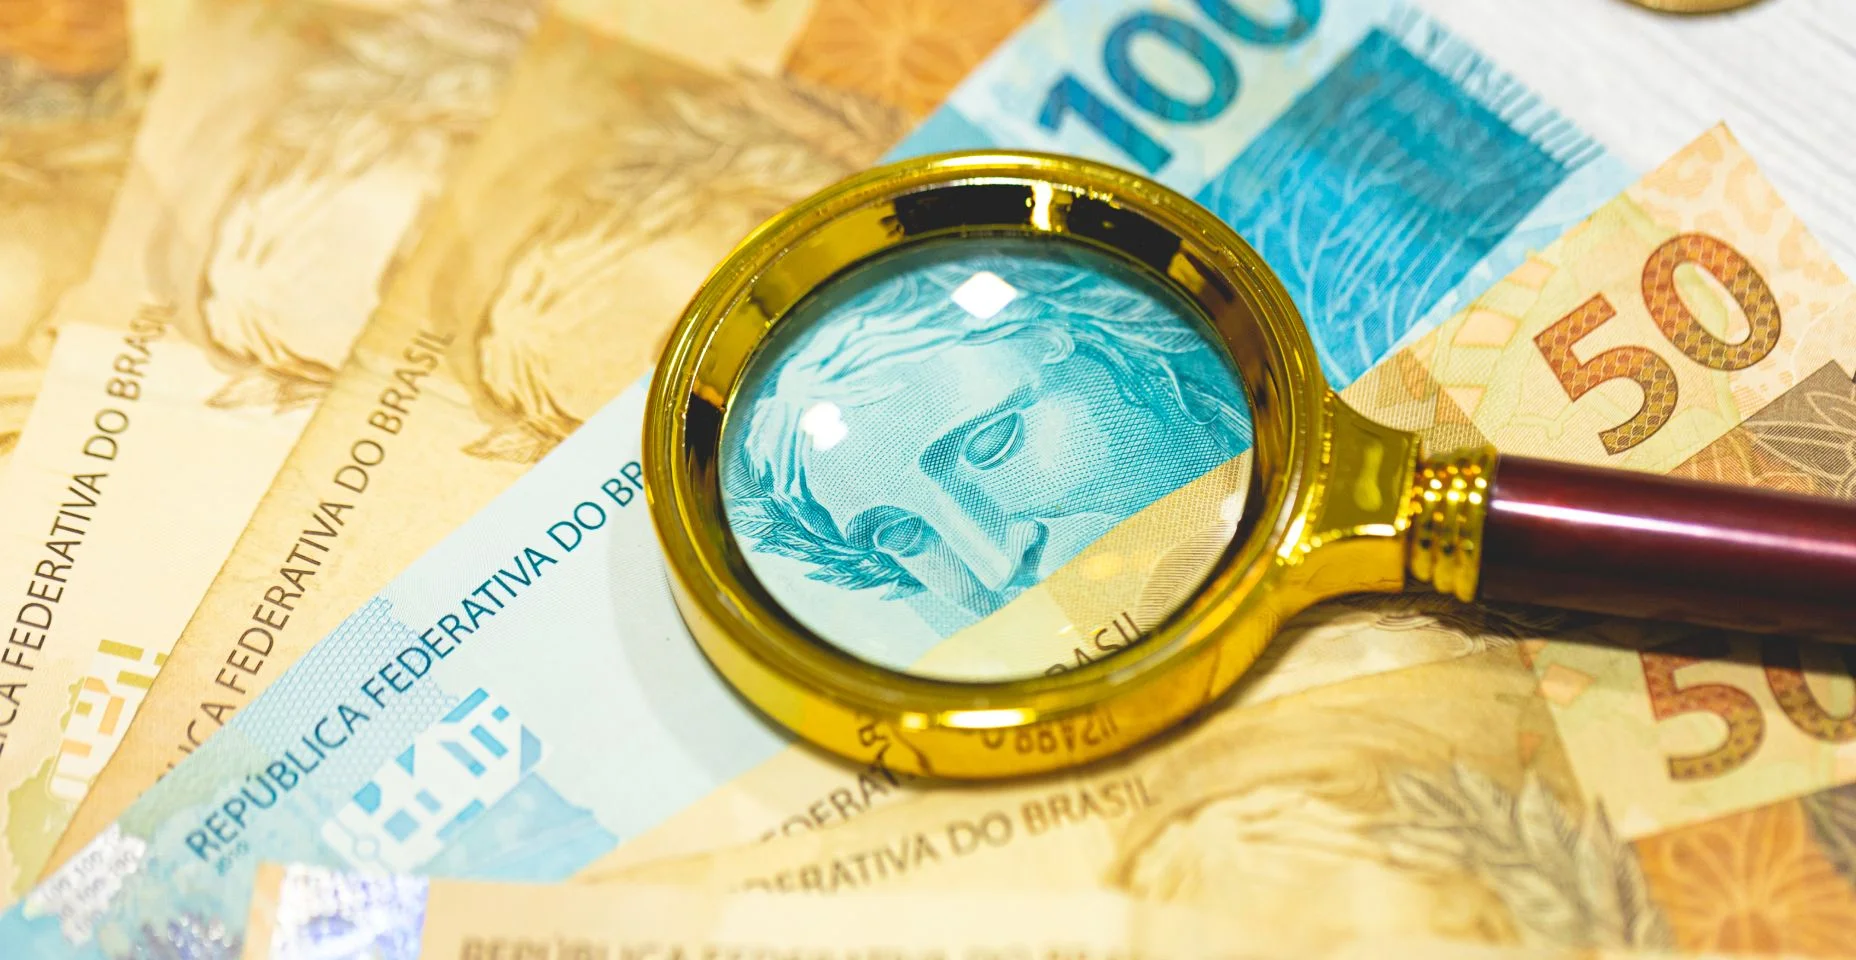 Notas de reais sobre uma mesa de madeira com uma lupa dourada na composição. Economia brasileira, finanças e inflação